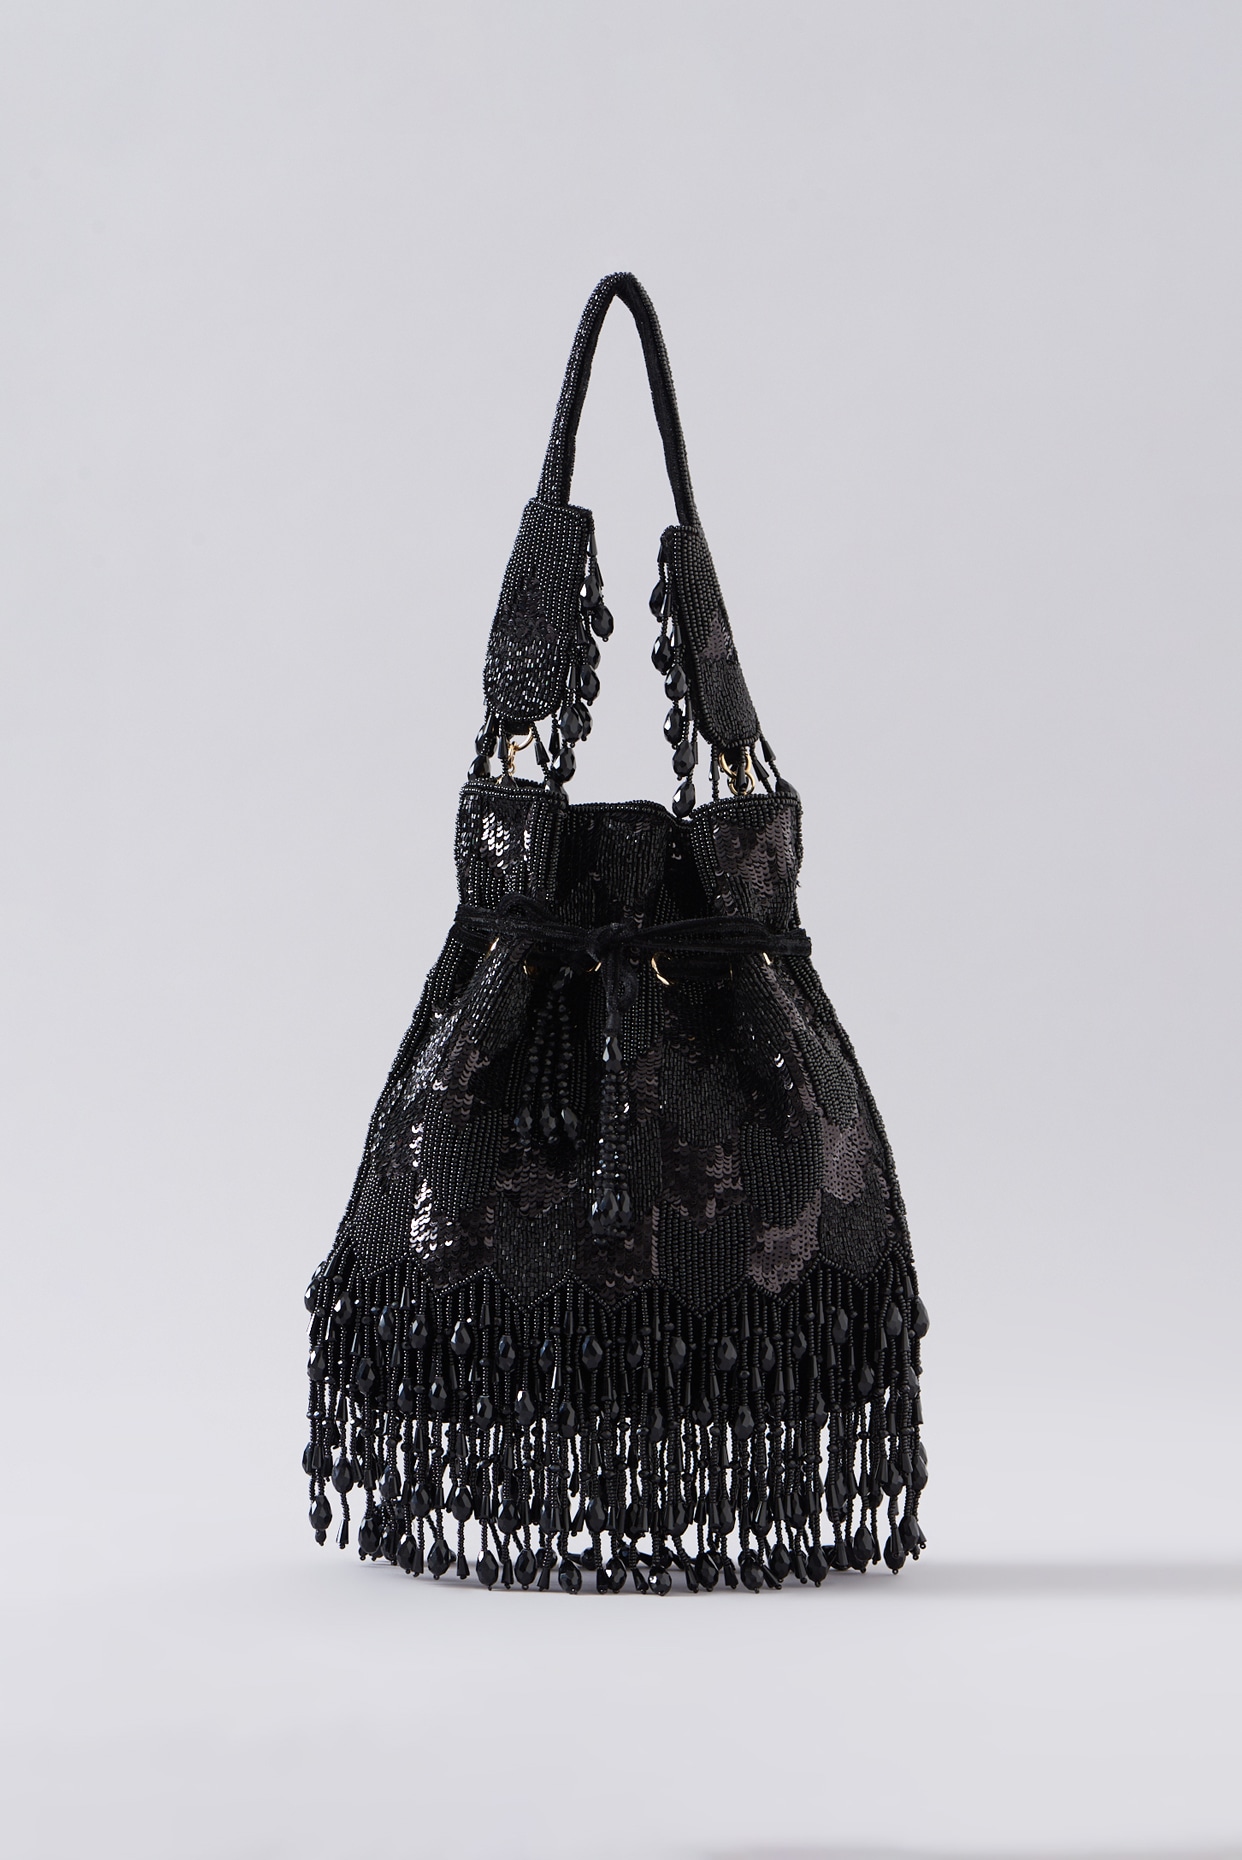 Official Rare Disney Parks Boutique Black Lace Design Purse Tote Shoulder  Bag | eBay